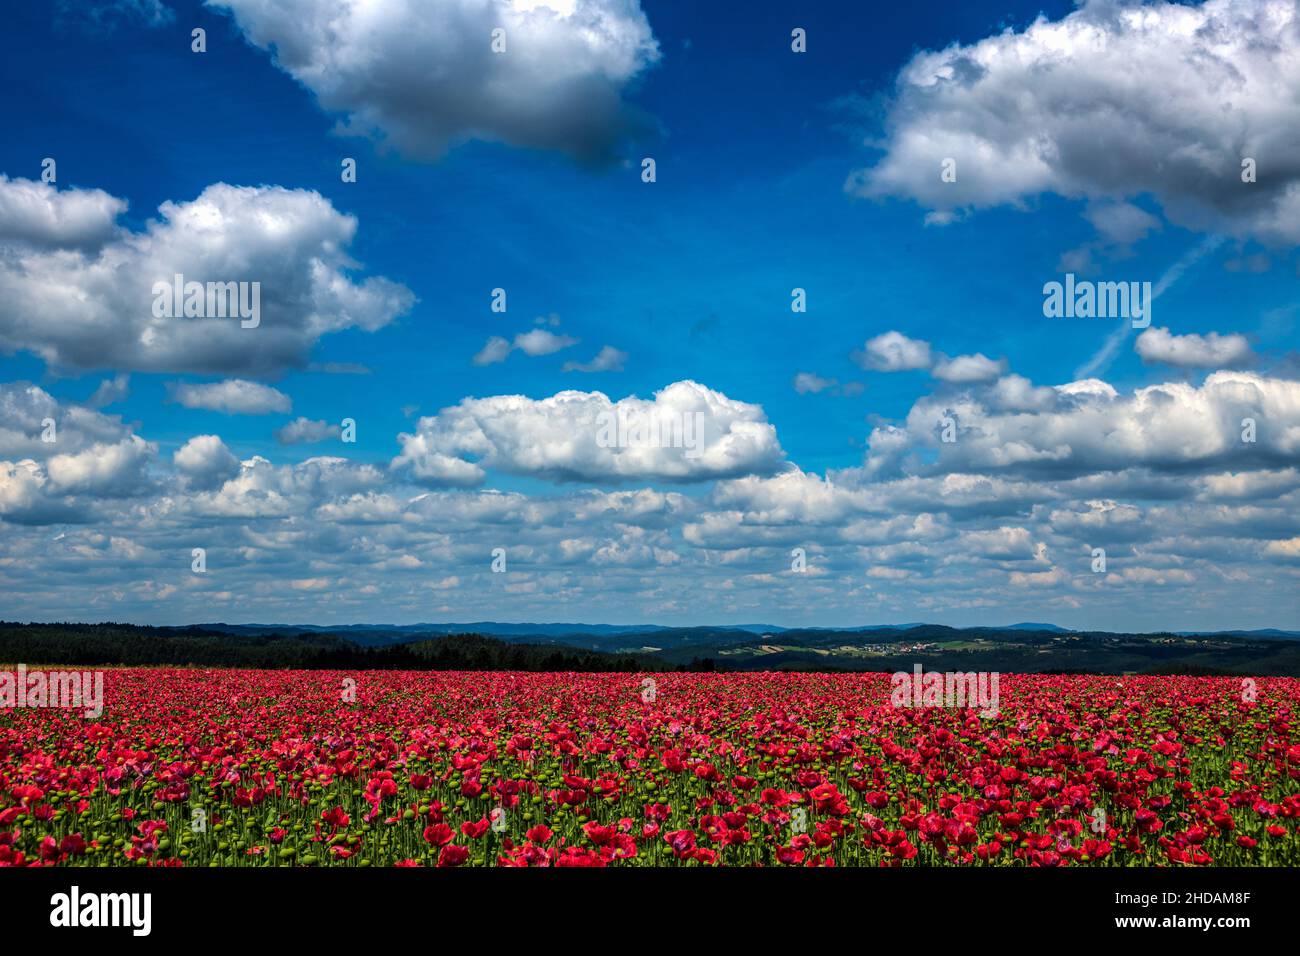 Österreich, Niederösterreich, in der Nähe von Armschlag. Ein Feld mit blühendem, roten Mohn erfreut das Auge. Foto Stock